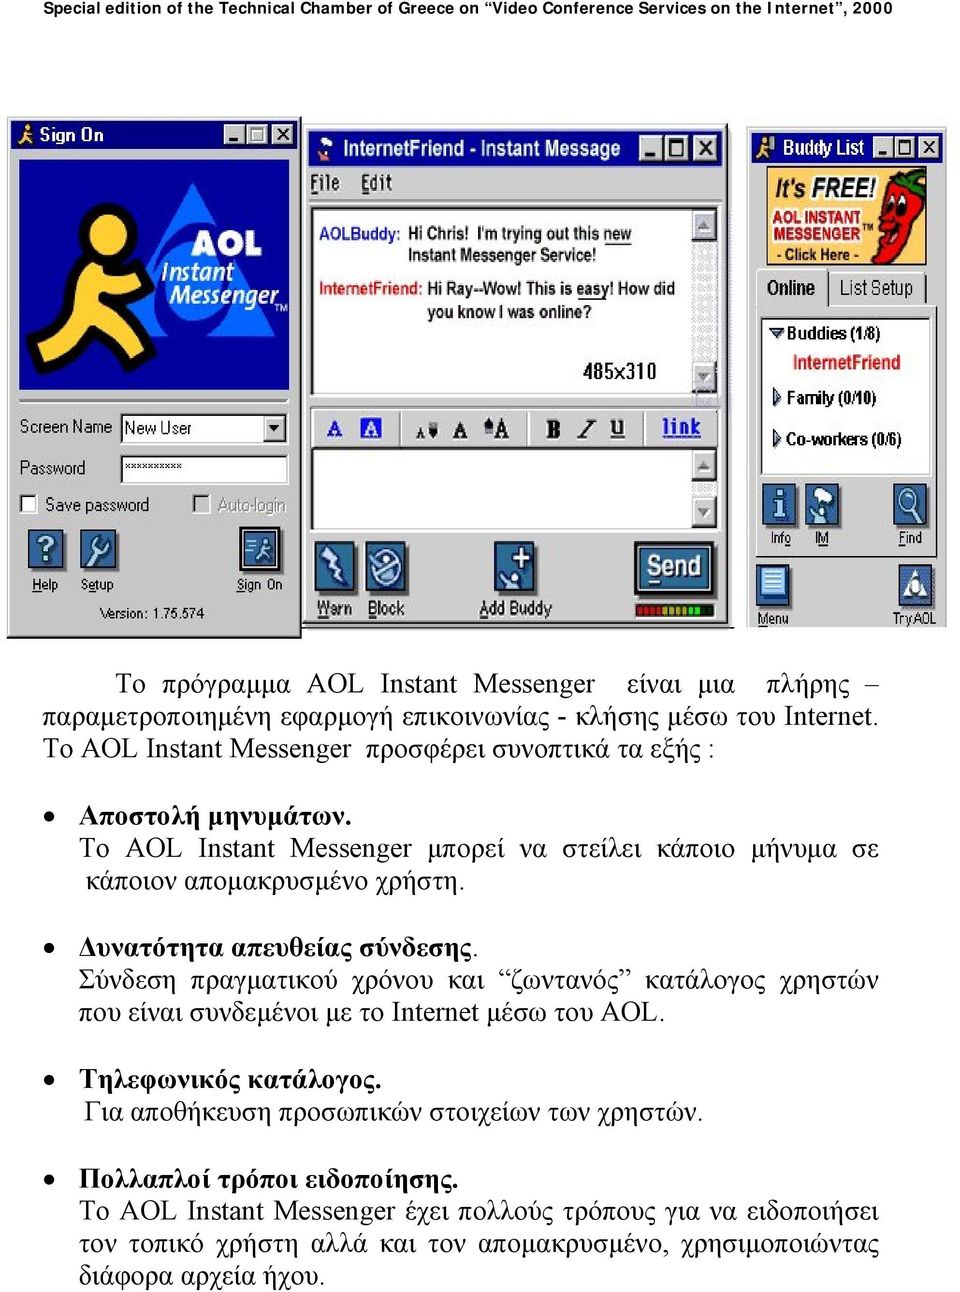 υνατότητα απευθείας σύνδεσης. Σύνδεση πραγµατικού χρόνου και ζωντανός κατάλογος χρηστών που είναι συνδεµένοι µε το Internet µέσω του AOL. Τηλεφωνικός κατάλογος.